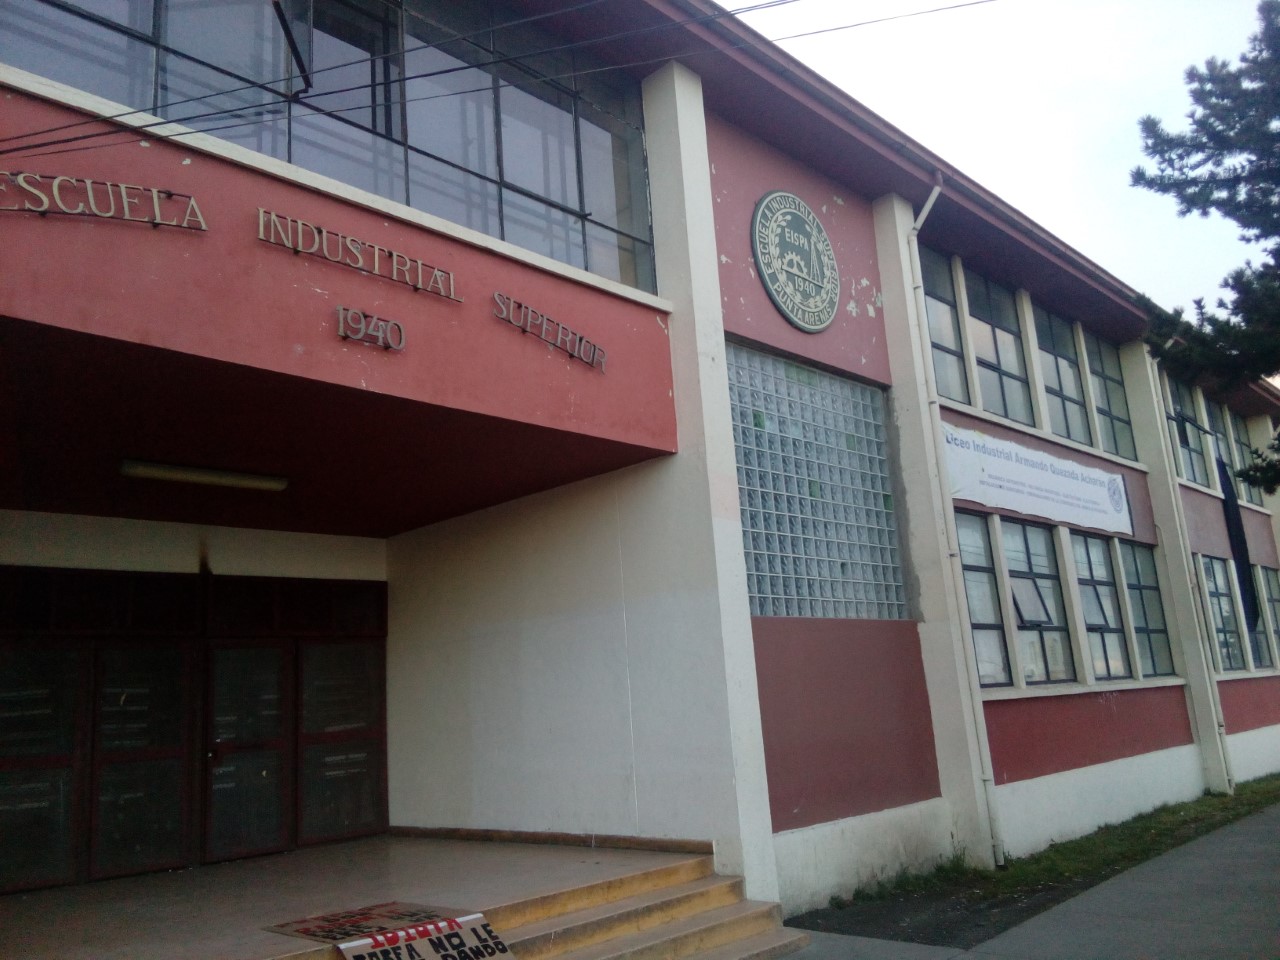 Ambiente de inquietud persiste en el Liceo Industrial de Punta Arenas